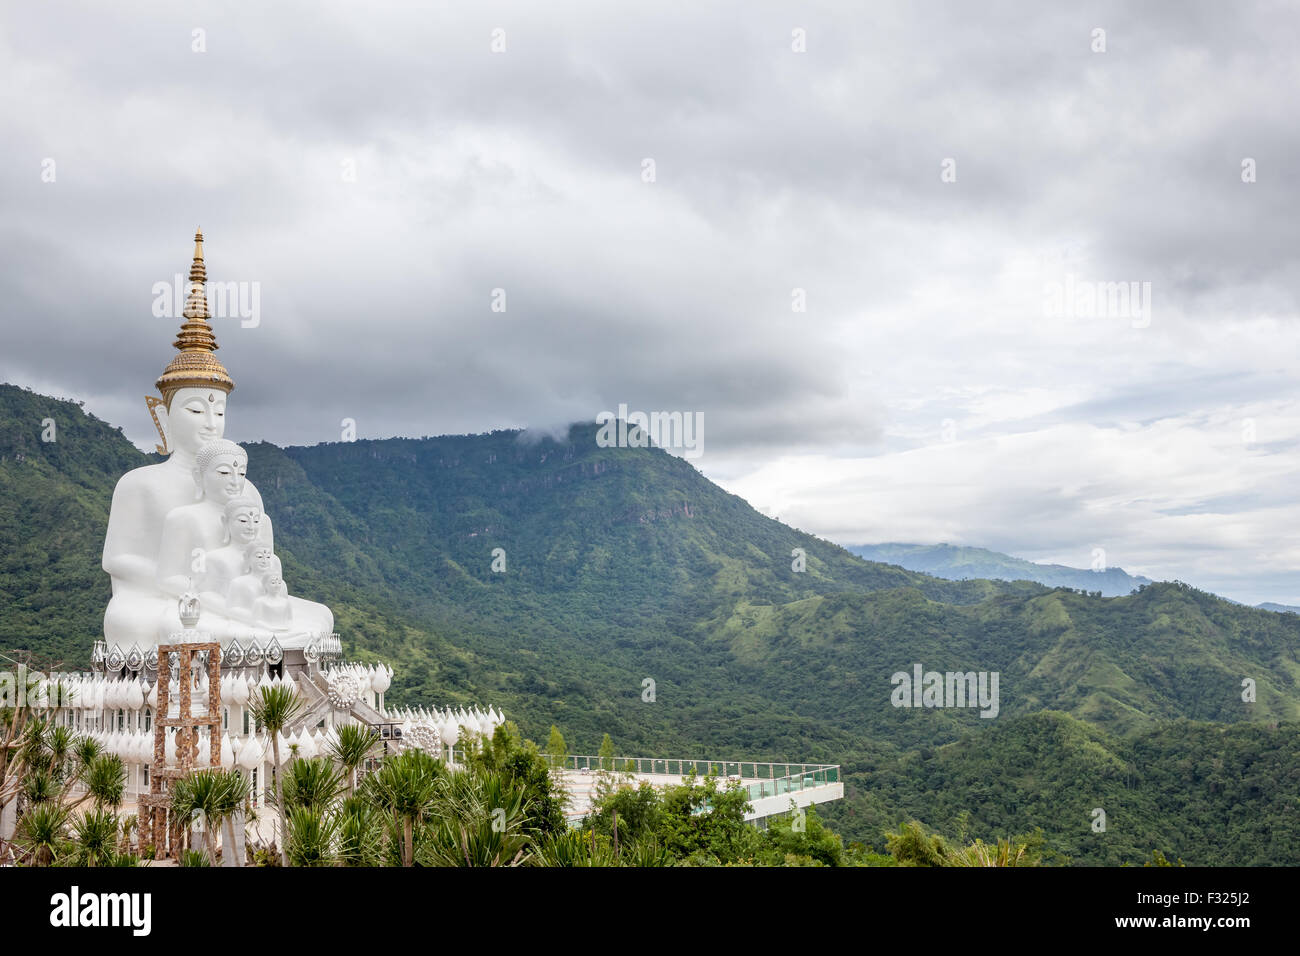 En las montañas de Khao Klo es un nuevo cinco Buda blanco apareciendo cerca uno del otro Foto de stock